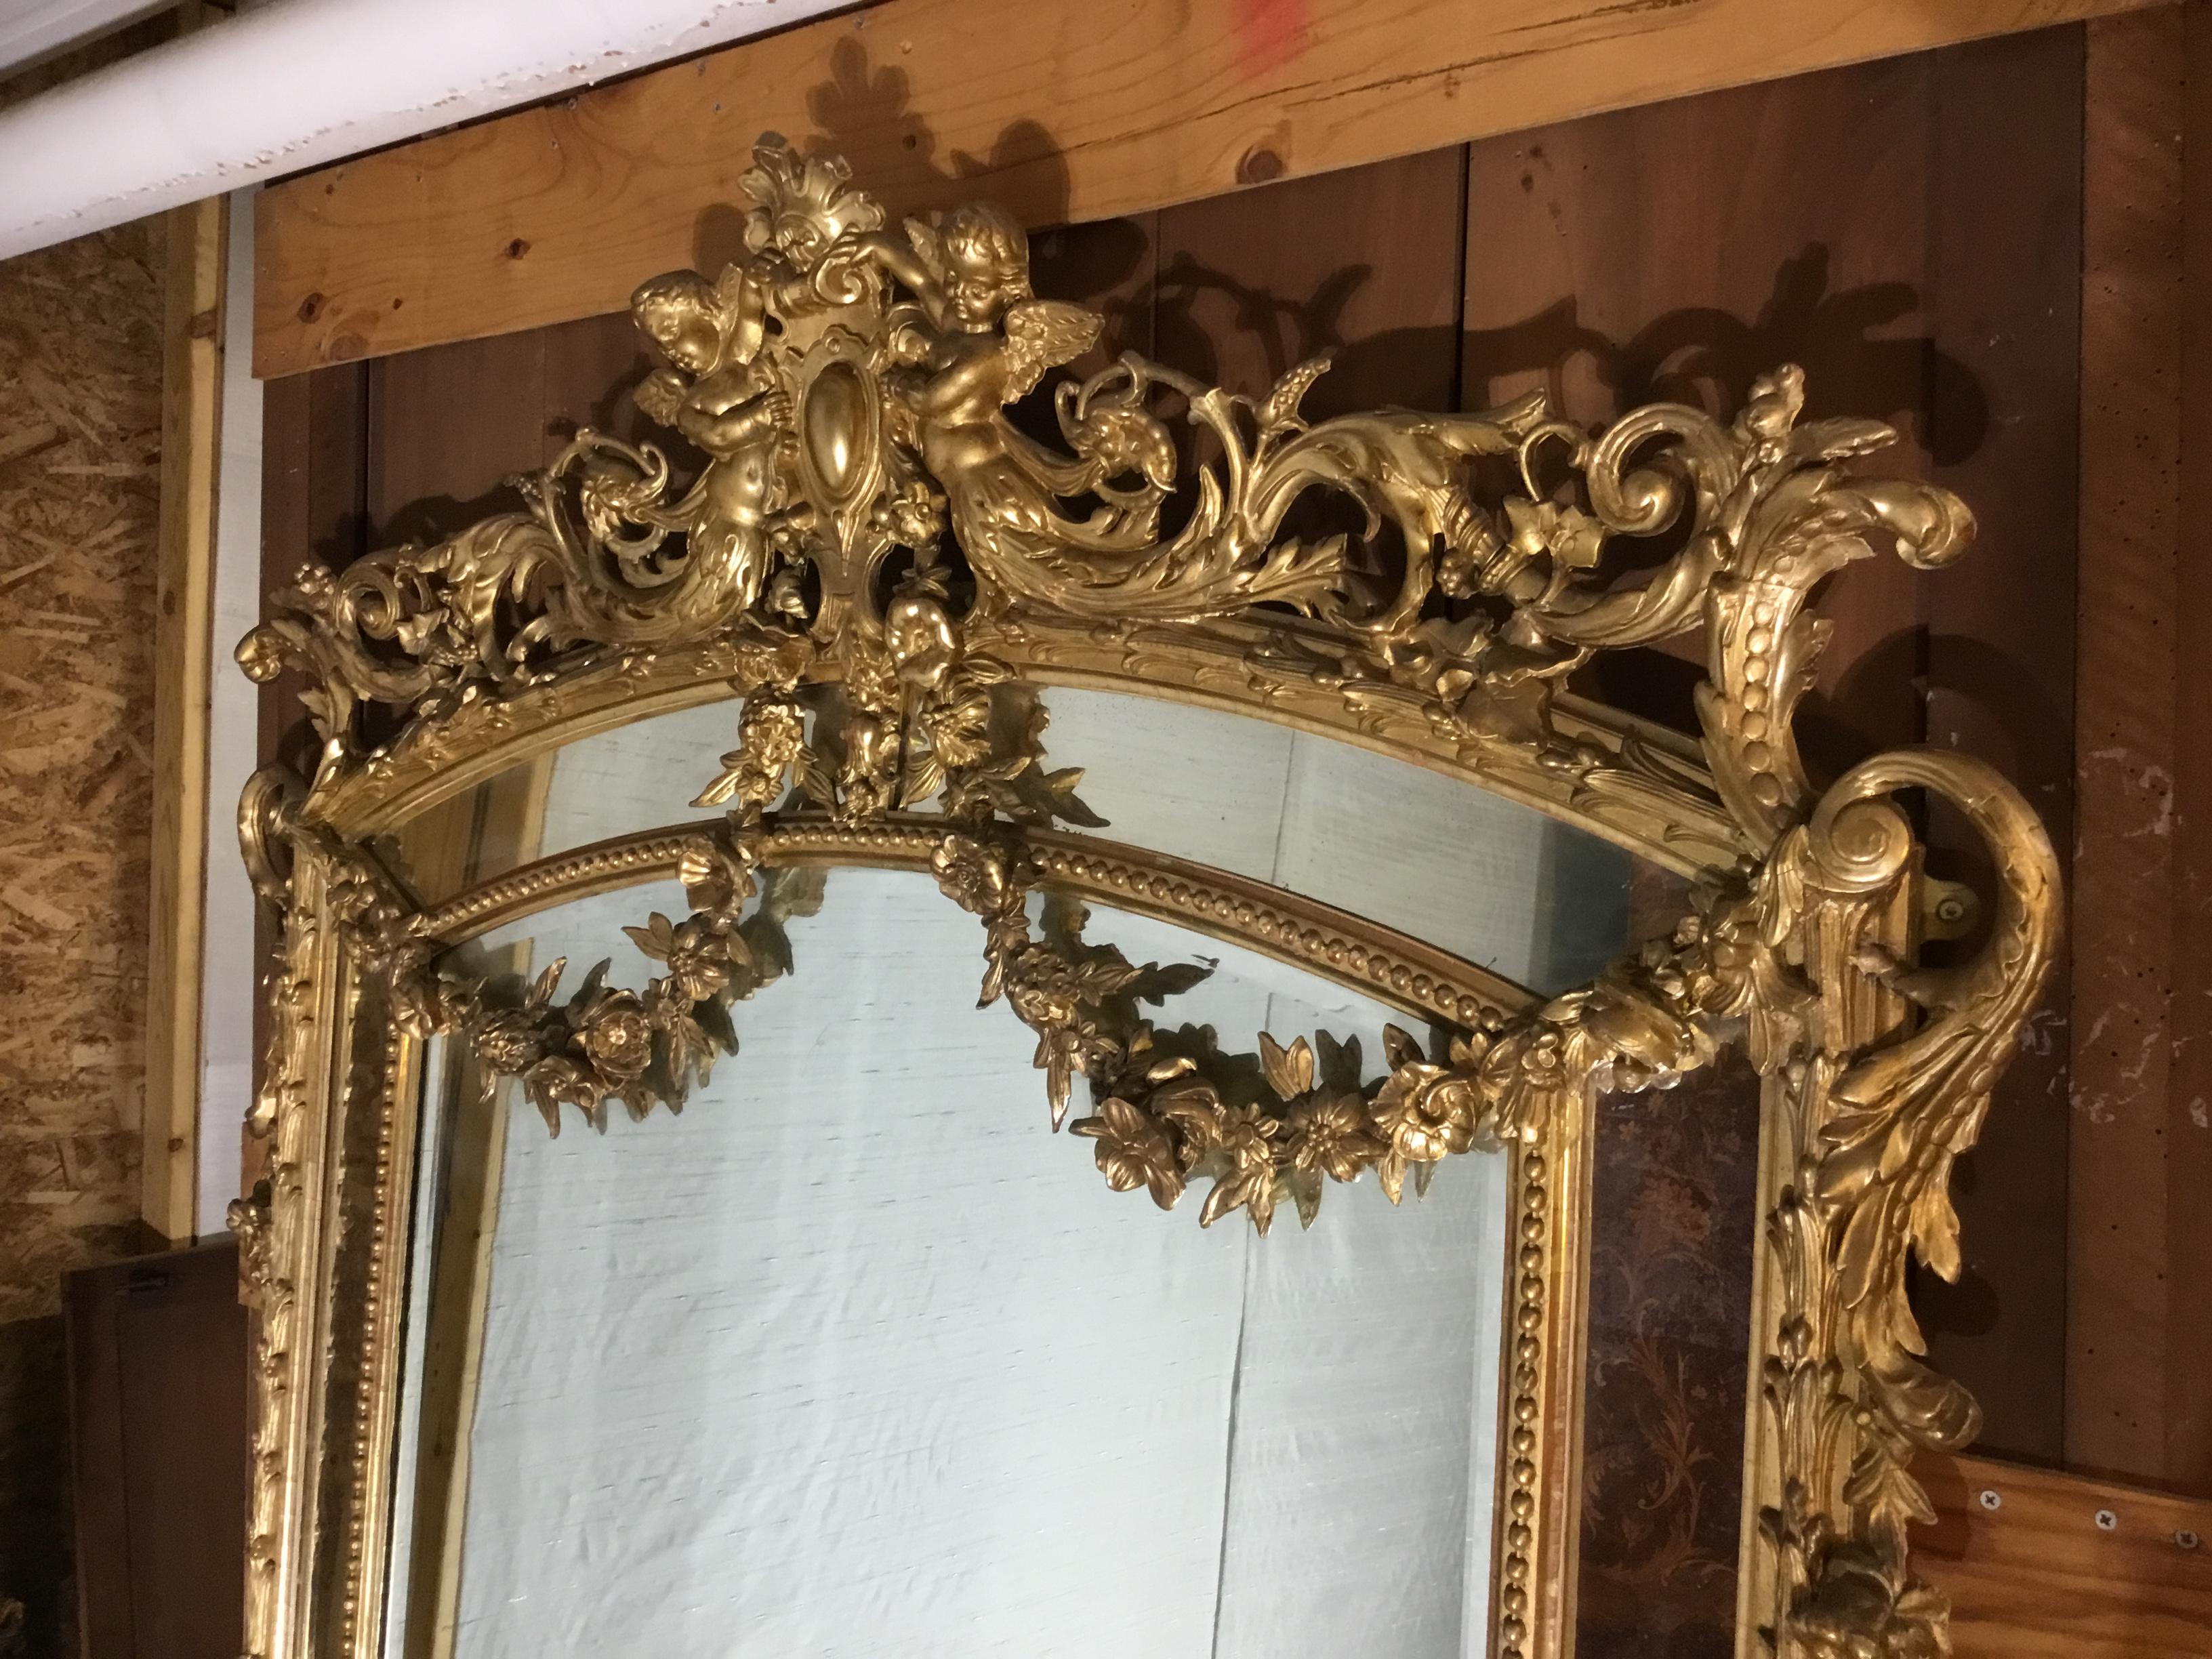 Voici un très beau miroir de parecloses ancien du 19ème siècle, de style français et doré. La forme du cadre du miroir et les décorations utilisées sont typiques du style Louis XVI. Le cadre du miroir comporte une plaque de verre centrale avec un